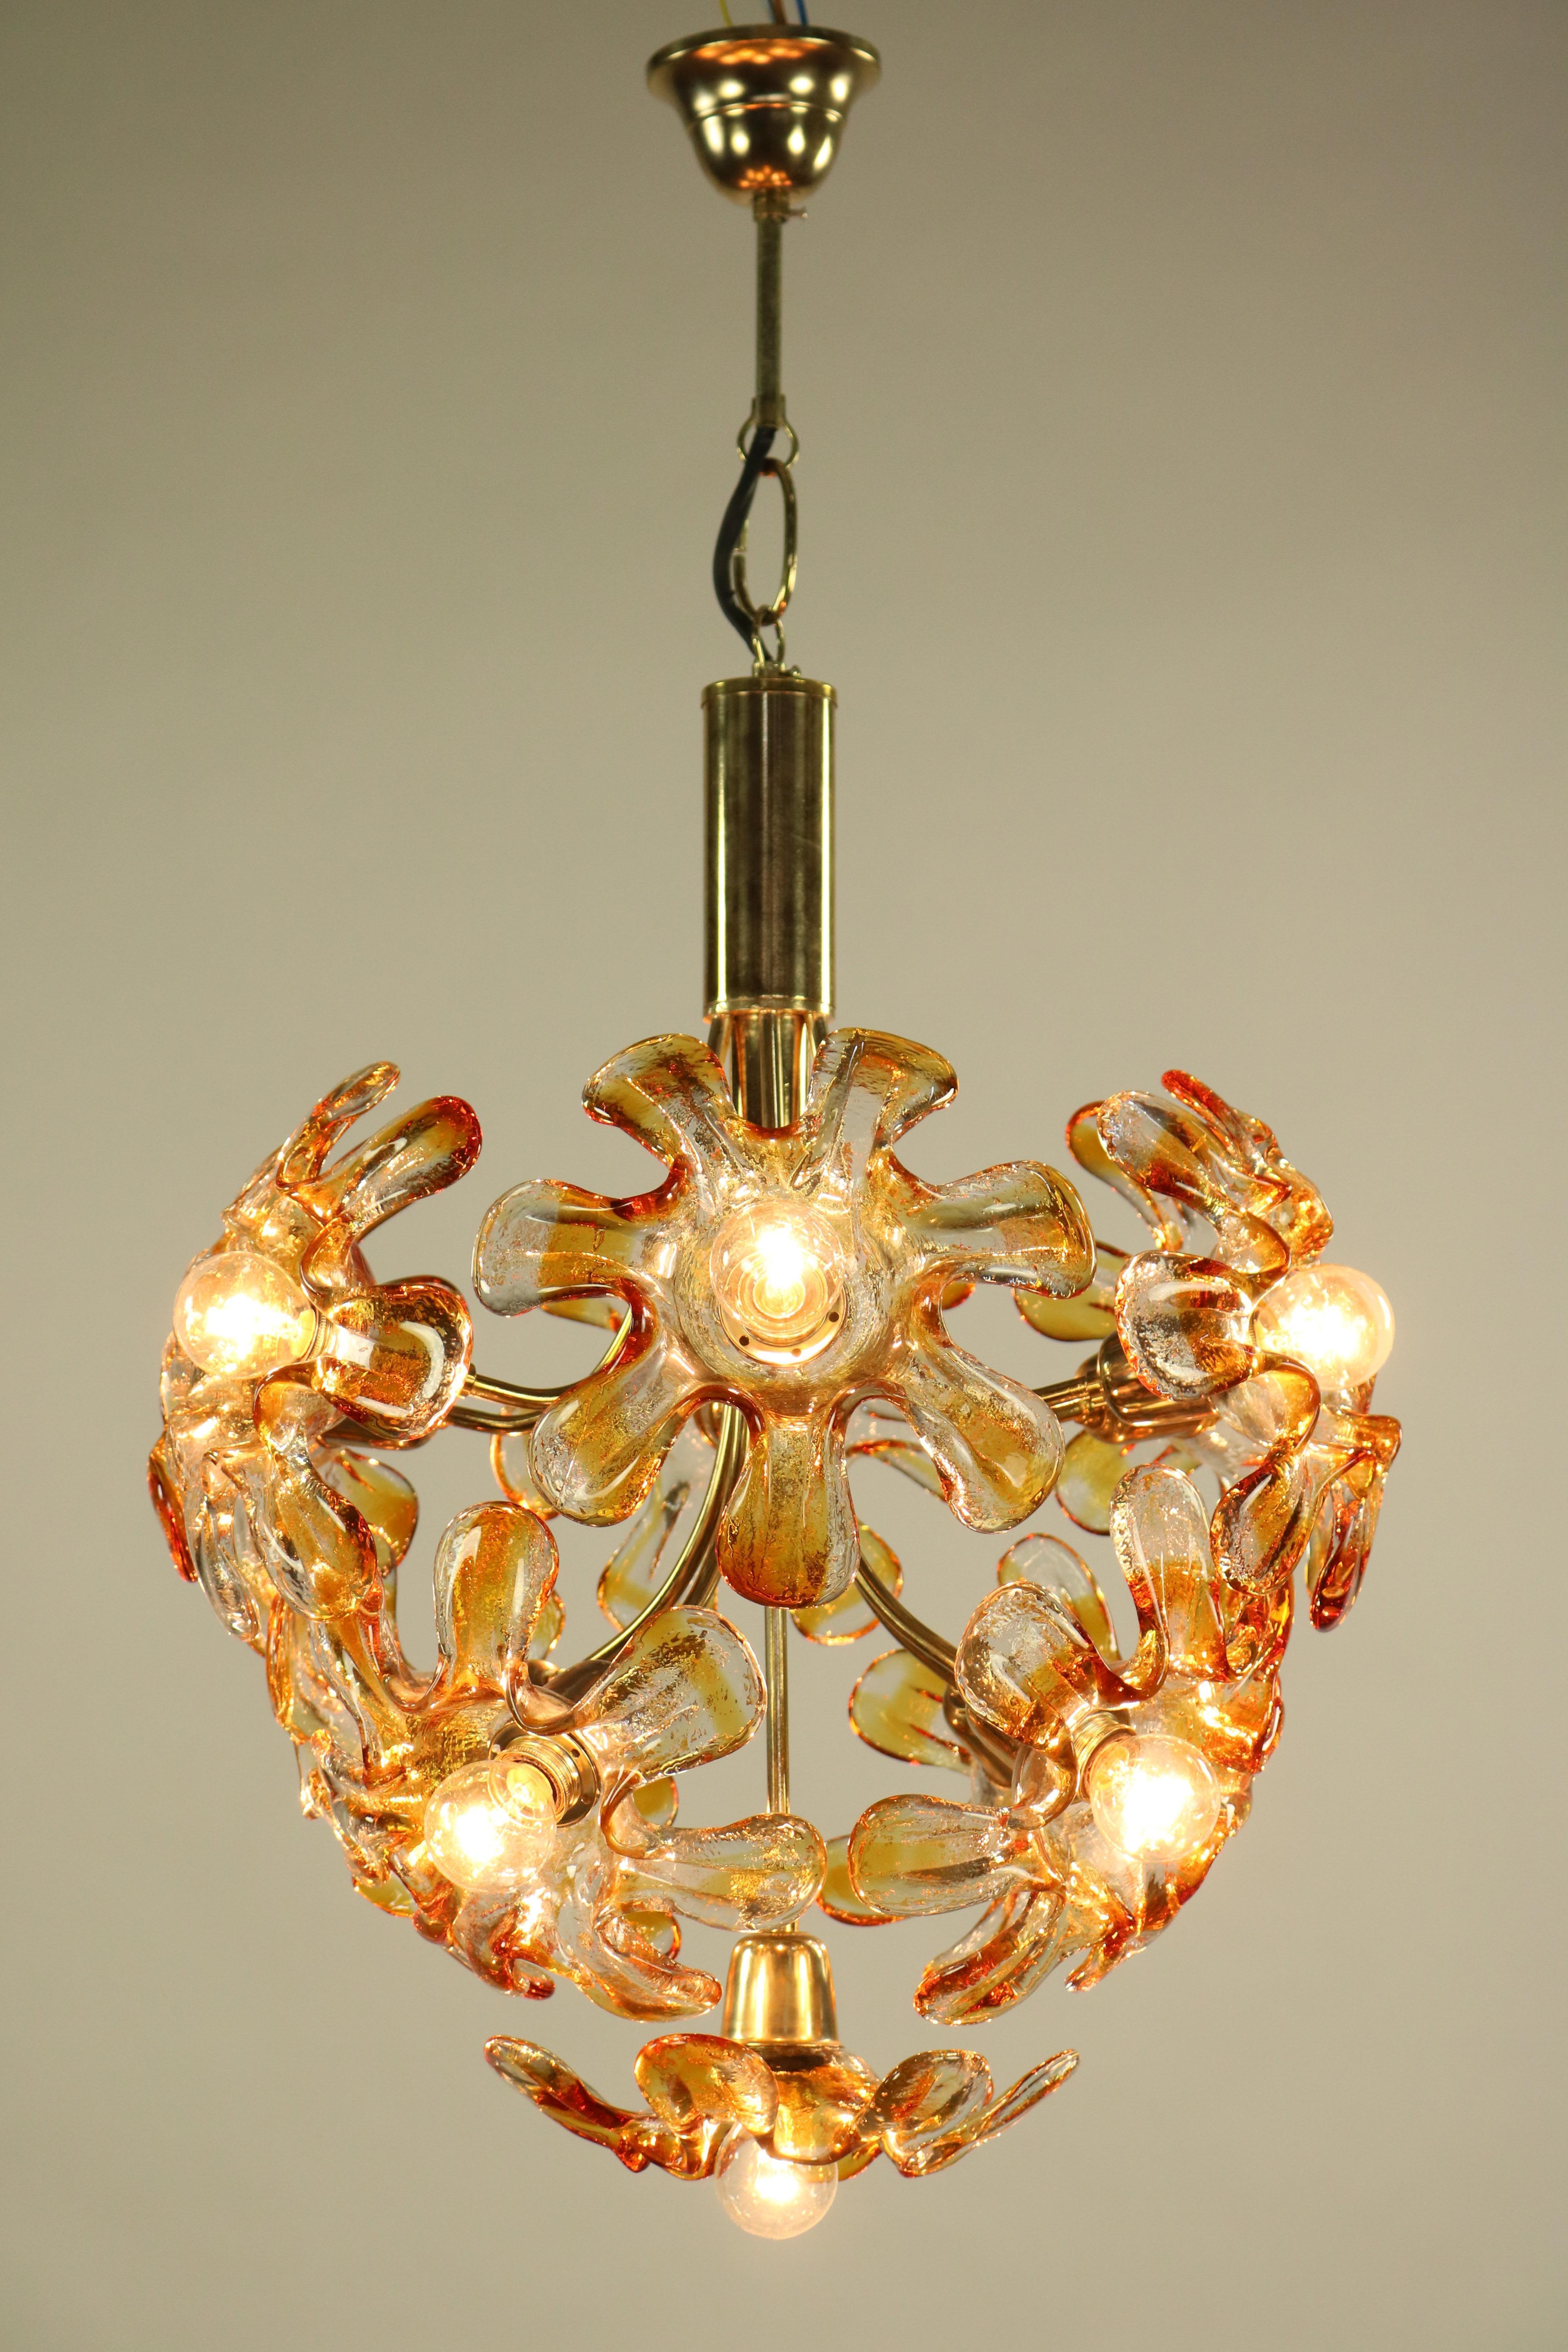 Italian Mazzega Murano Glass Flower or Blossom Chandelier 11 Light Pendant Lamp For Sale